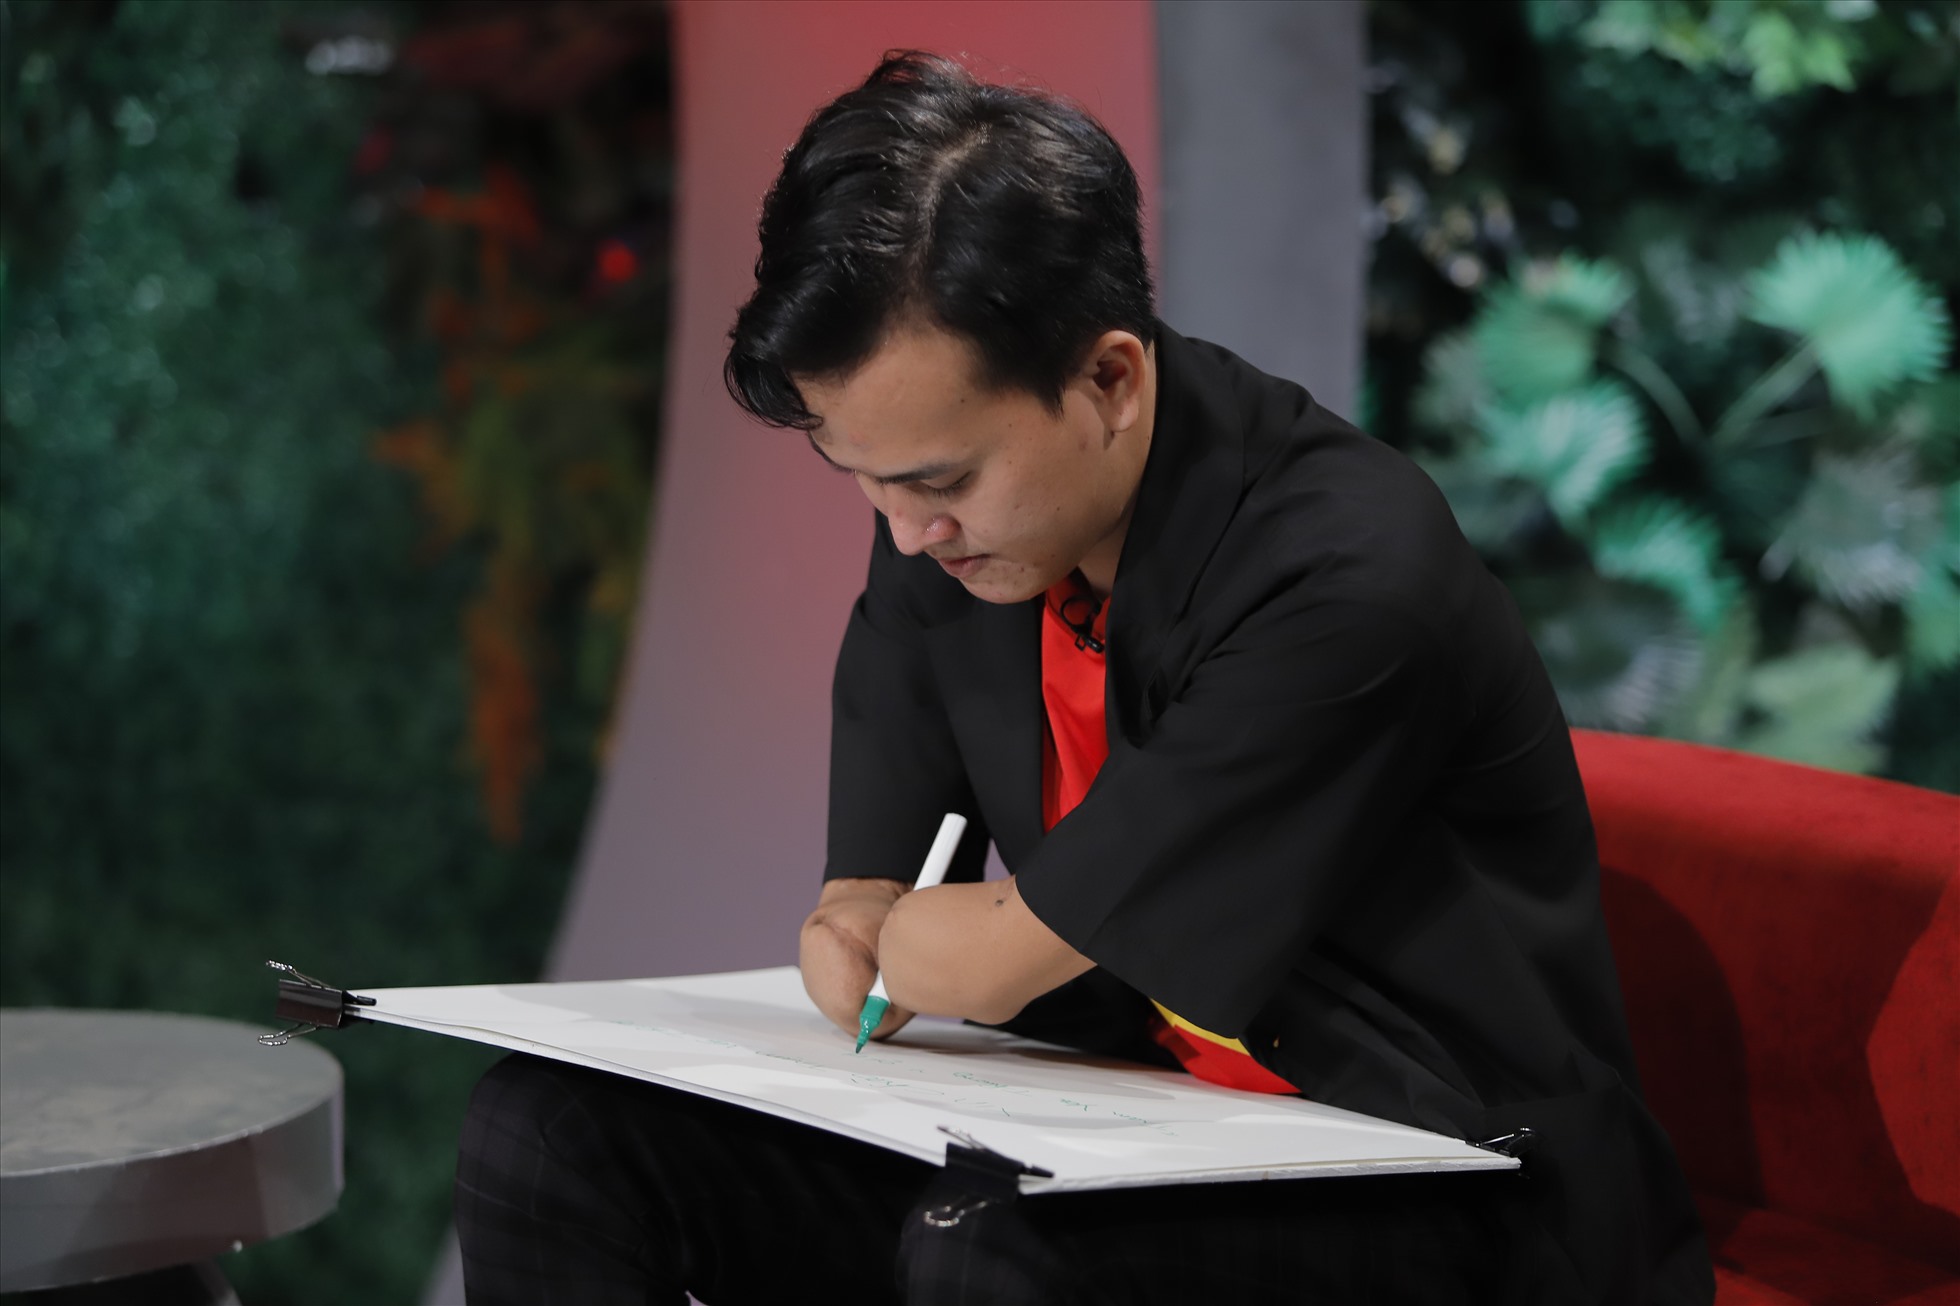 Chàng trai khuyết tật Nguyễn Ngọc Nhứt lkhiến người xem chương trình ngưỡng mộ bởi những tài lẻ của mình. Ảnh: VTV